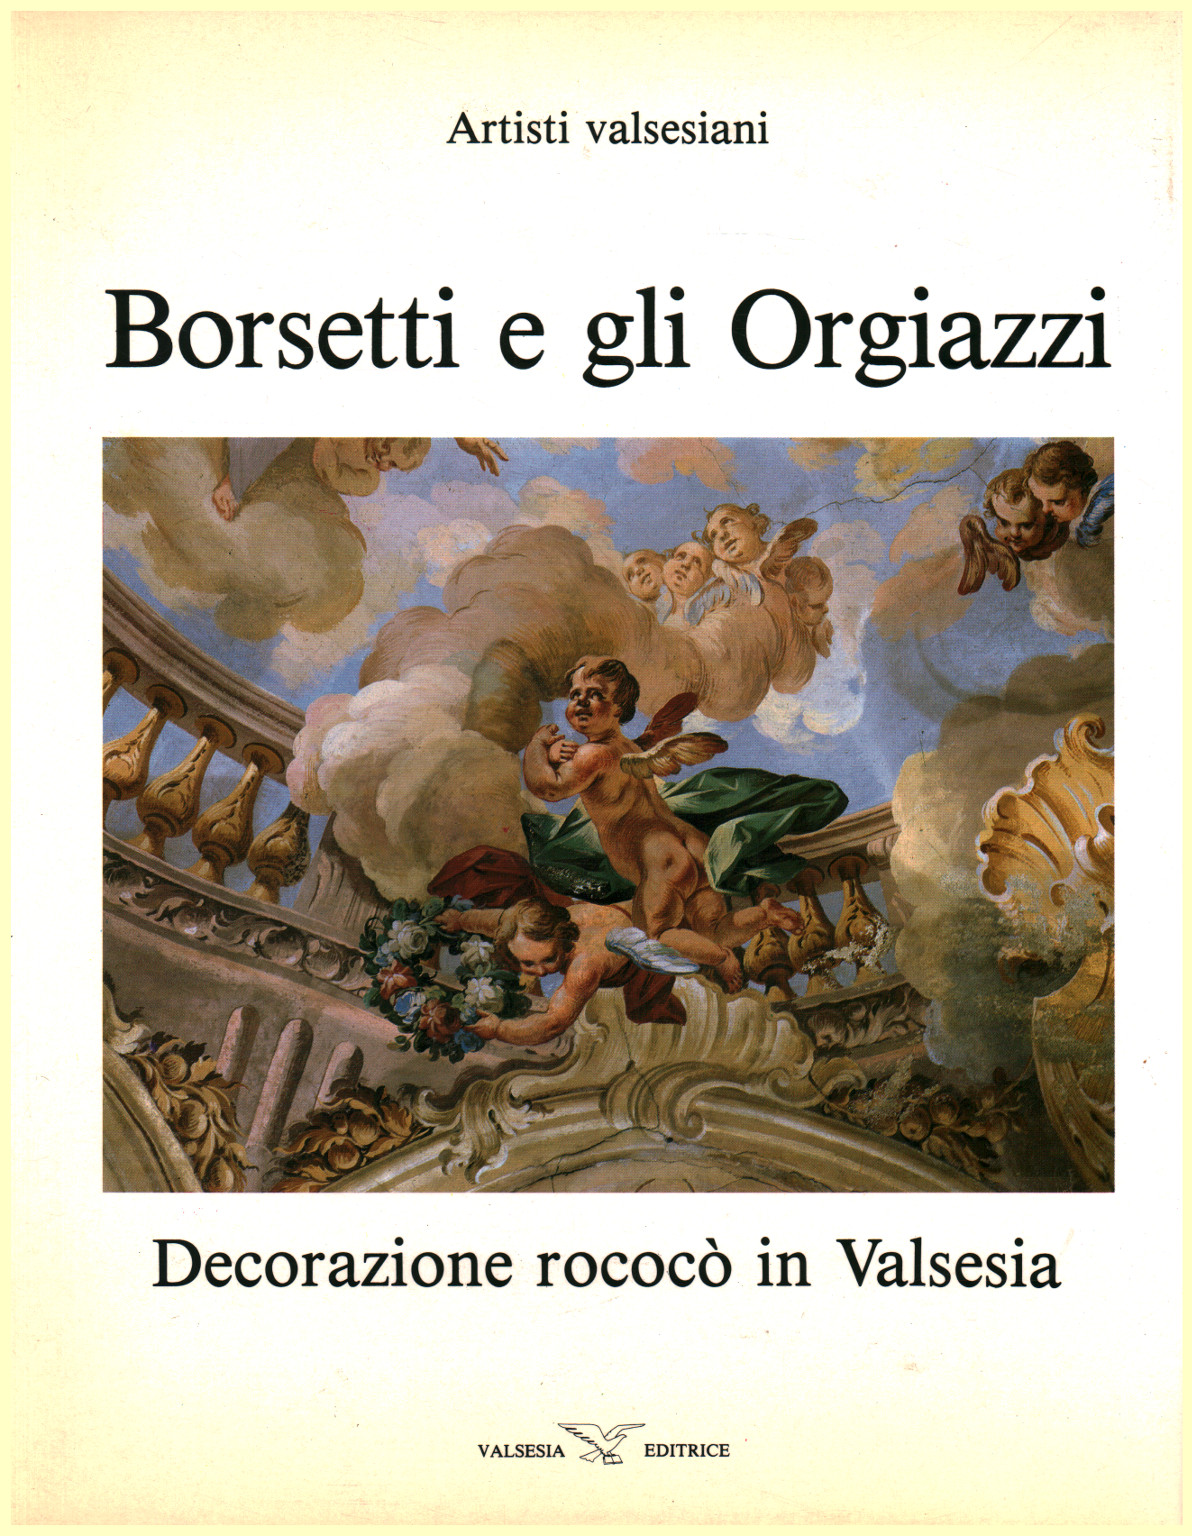 Borsetti und die Orgiazzi, s.zu.